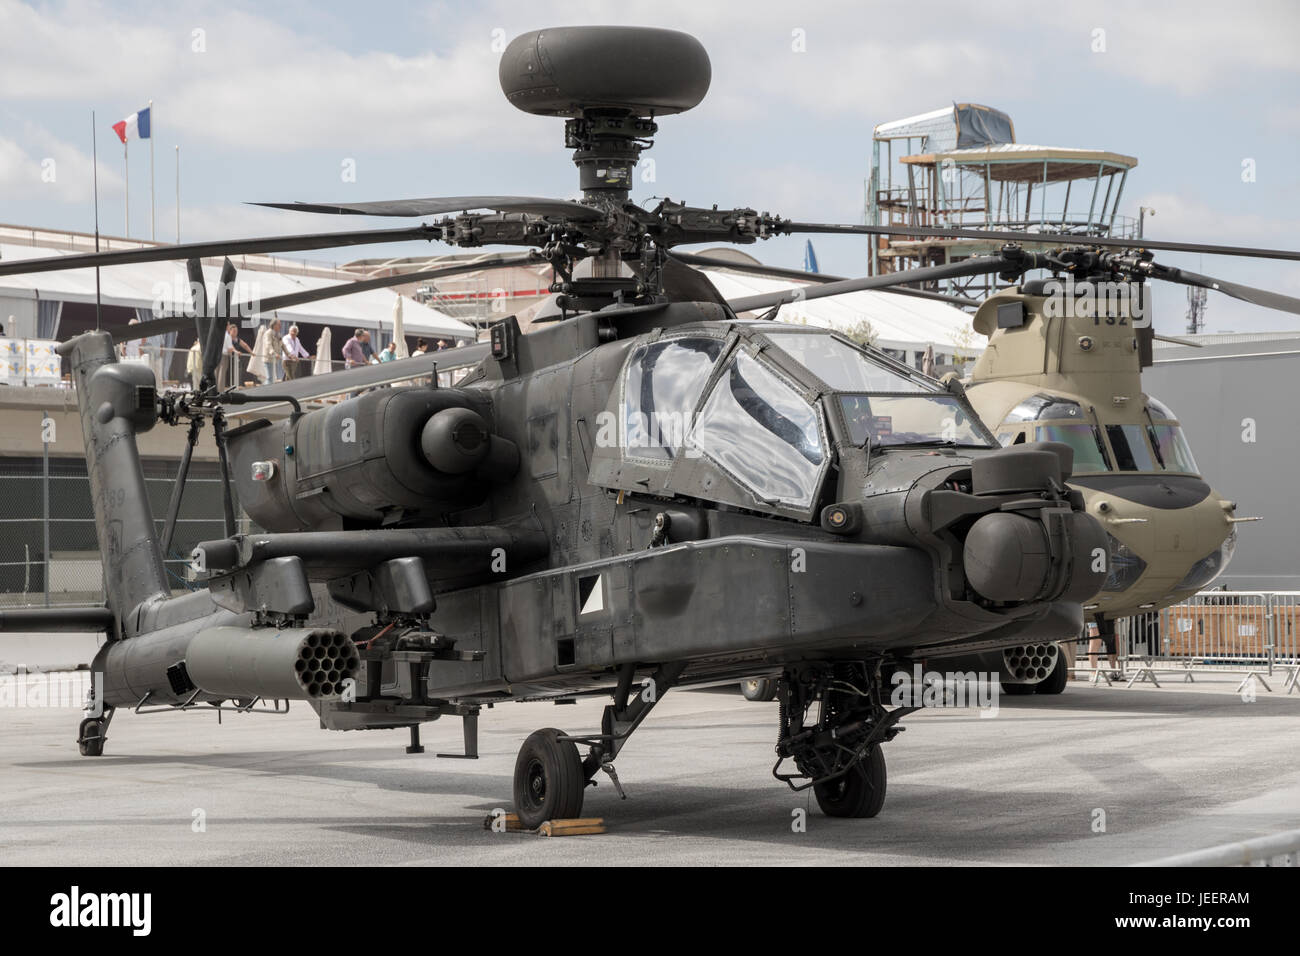 PARIS, Frankreich - 23. Juni 2017: U.S. Army Boeing AH-64 Apache Kampfhubschrauber auf dem Display auf der Paris Air Show 2017 Stockfoto